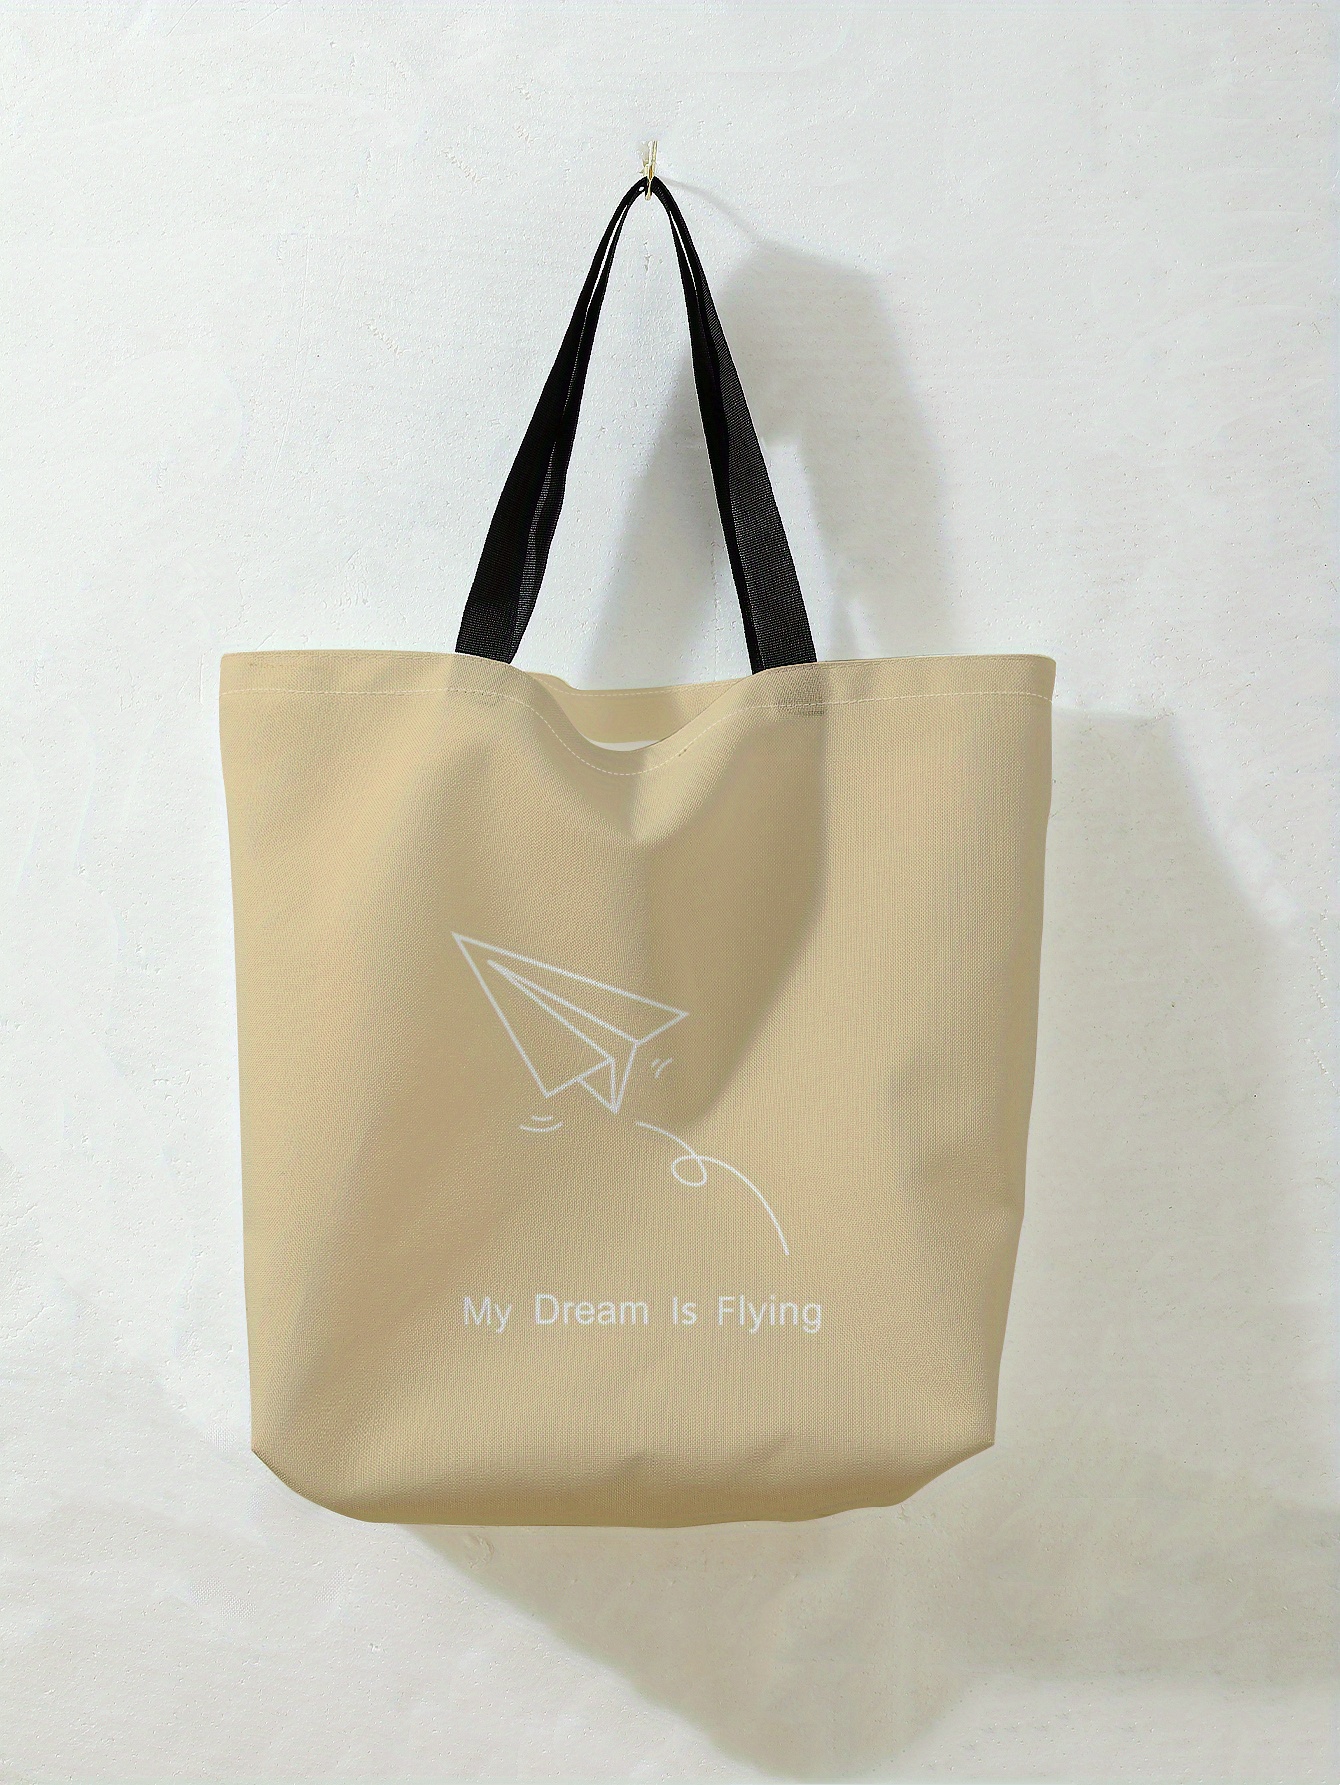 Paper Airplane Print Tote Bag, Large Travel Beach Shoulder Bag